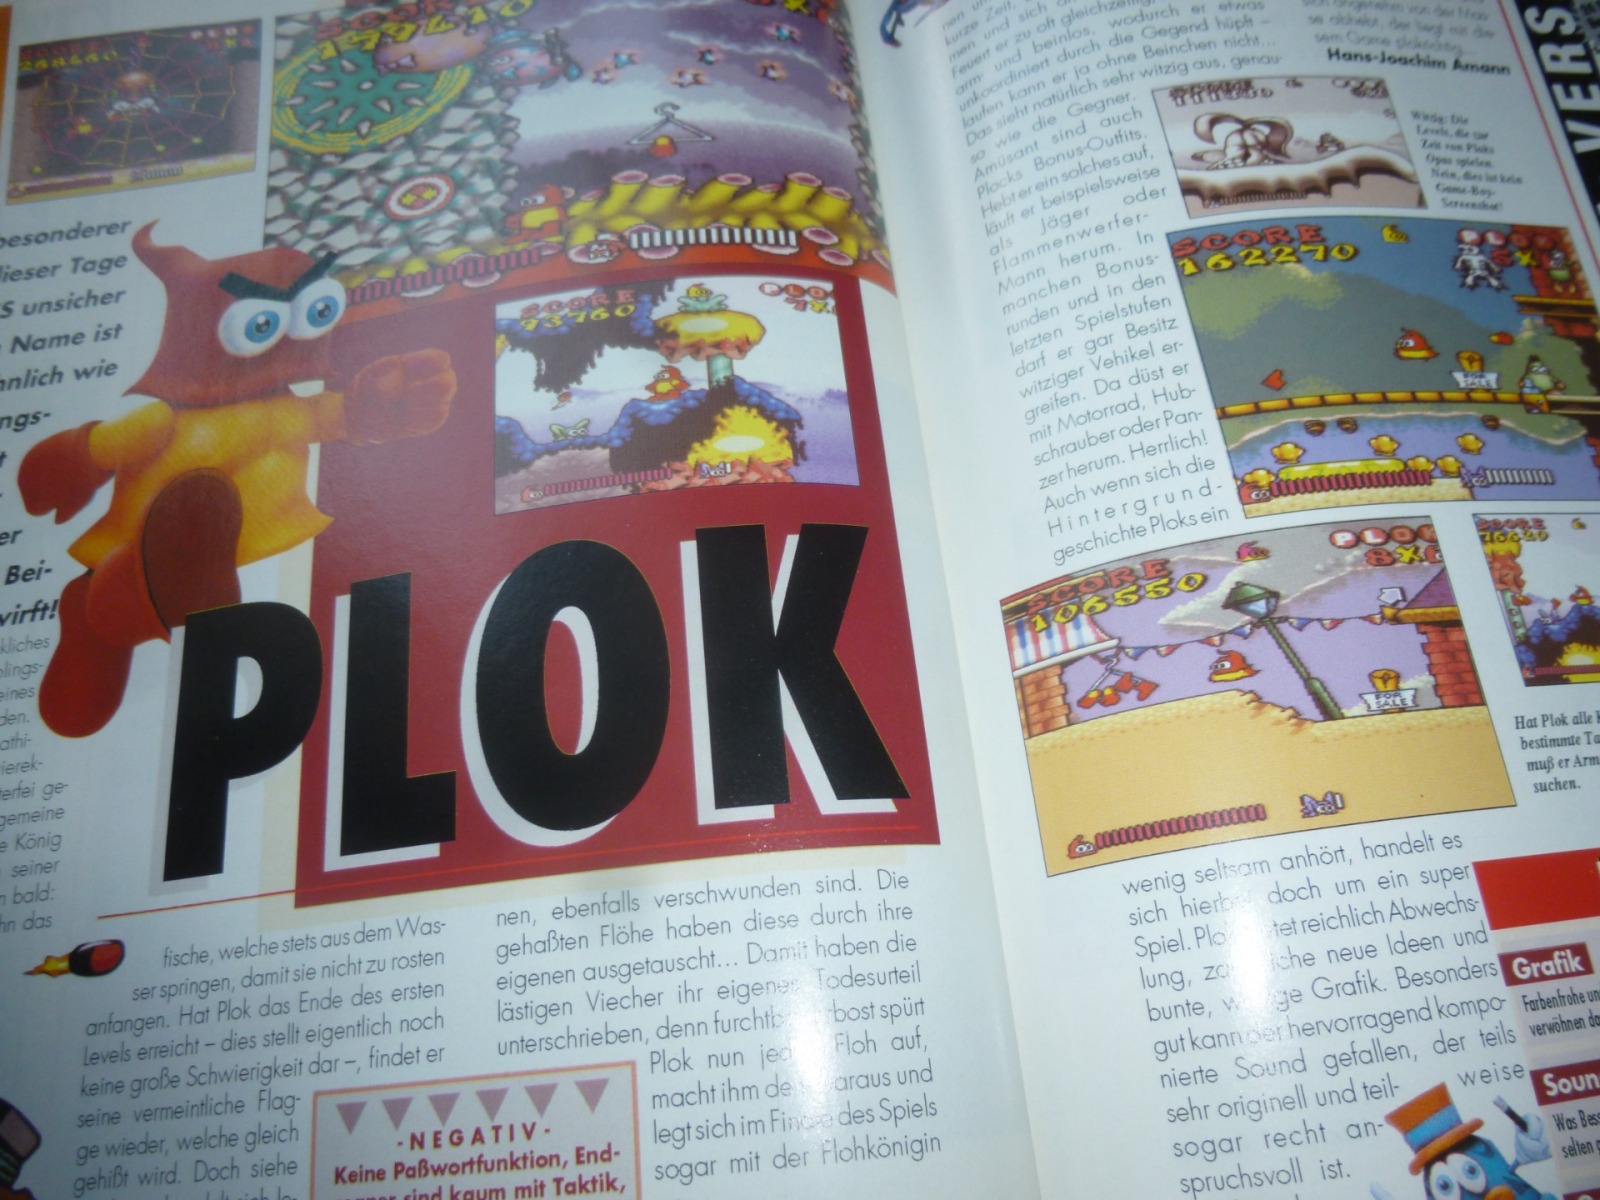 TOTAL Das unabhängige Magazin - 100 Nintendo - Ausgabe 12/93 1993 27